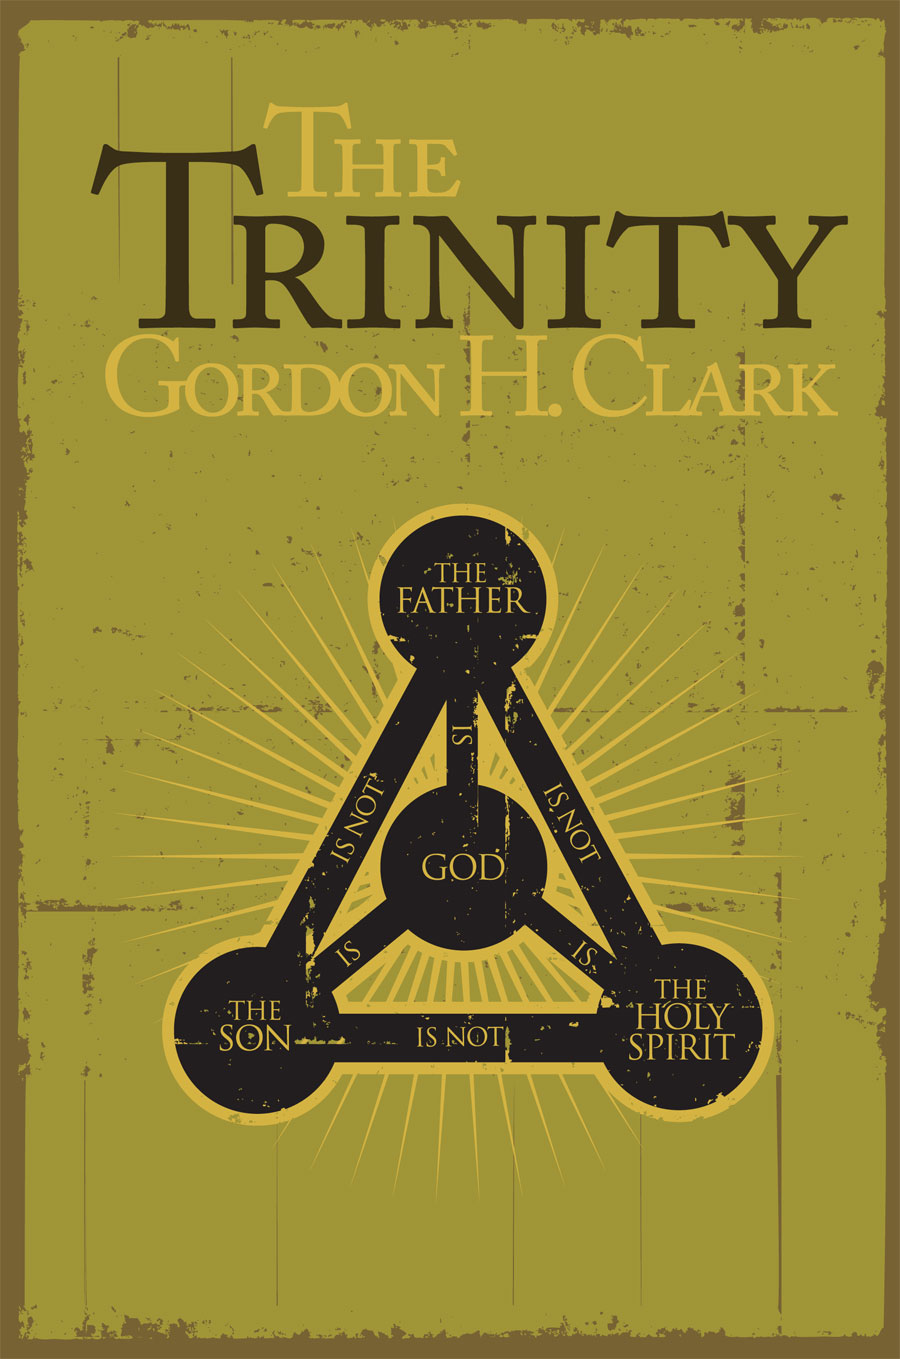 Trinity, The